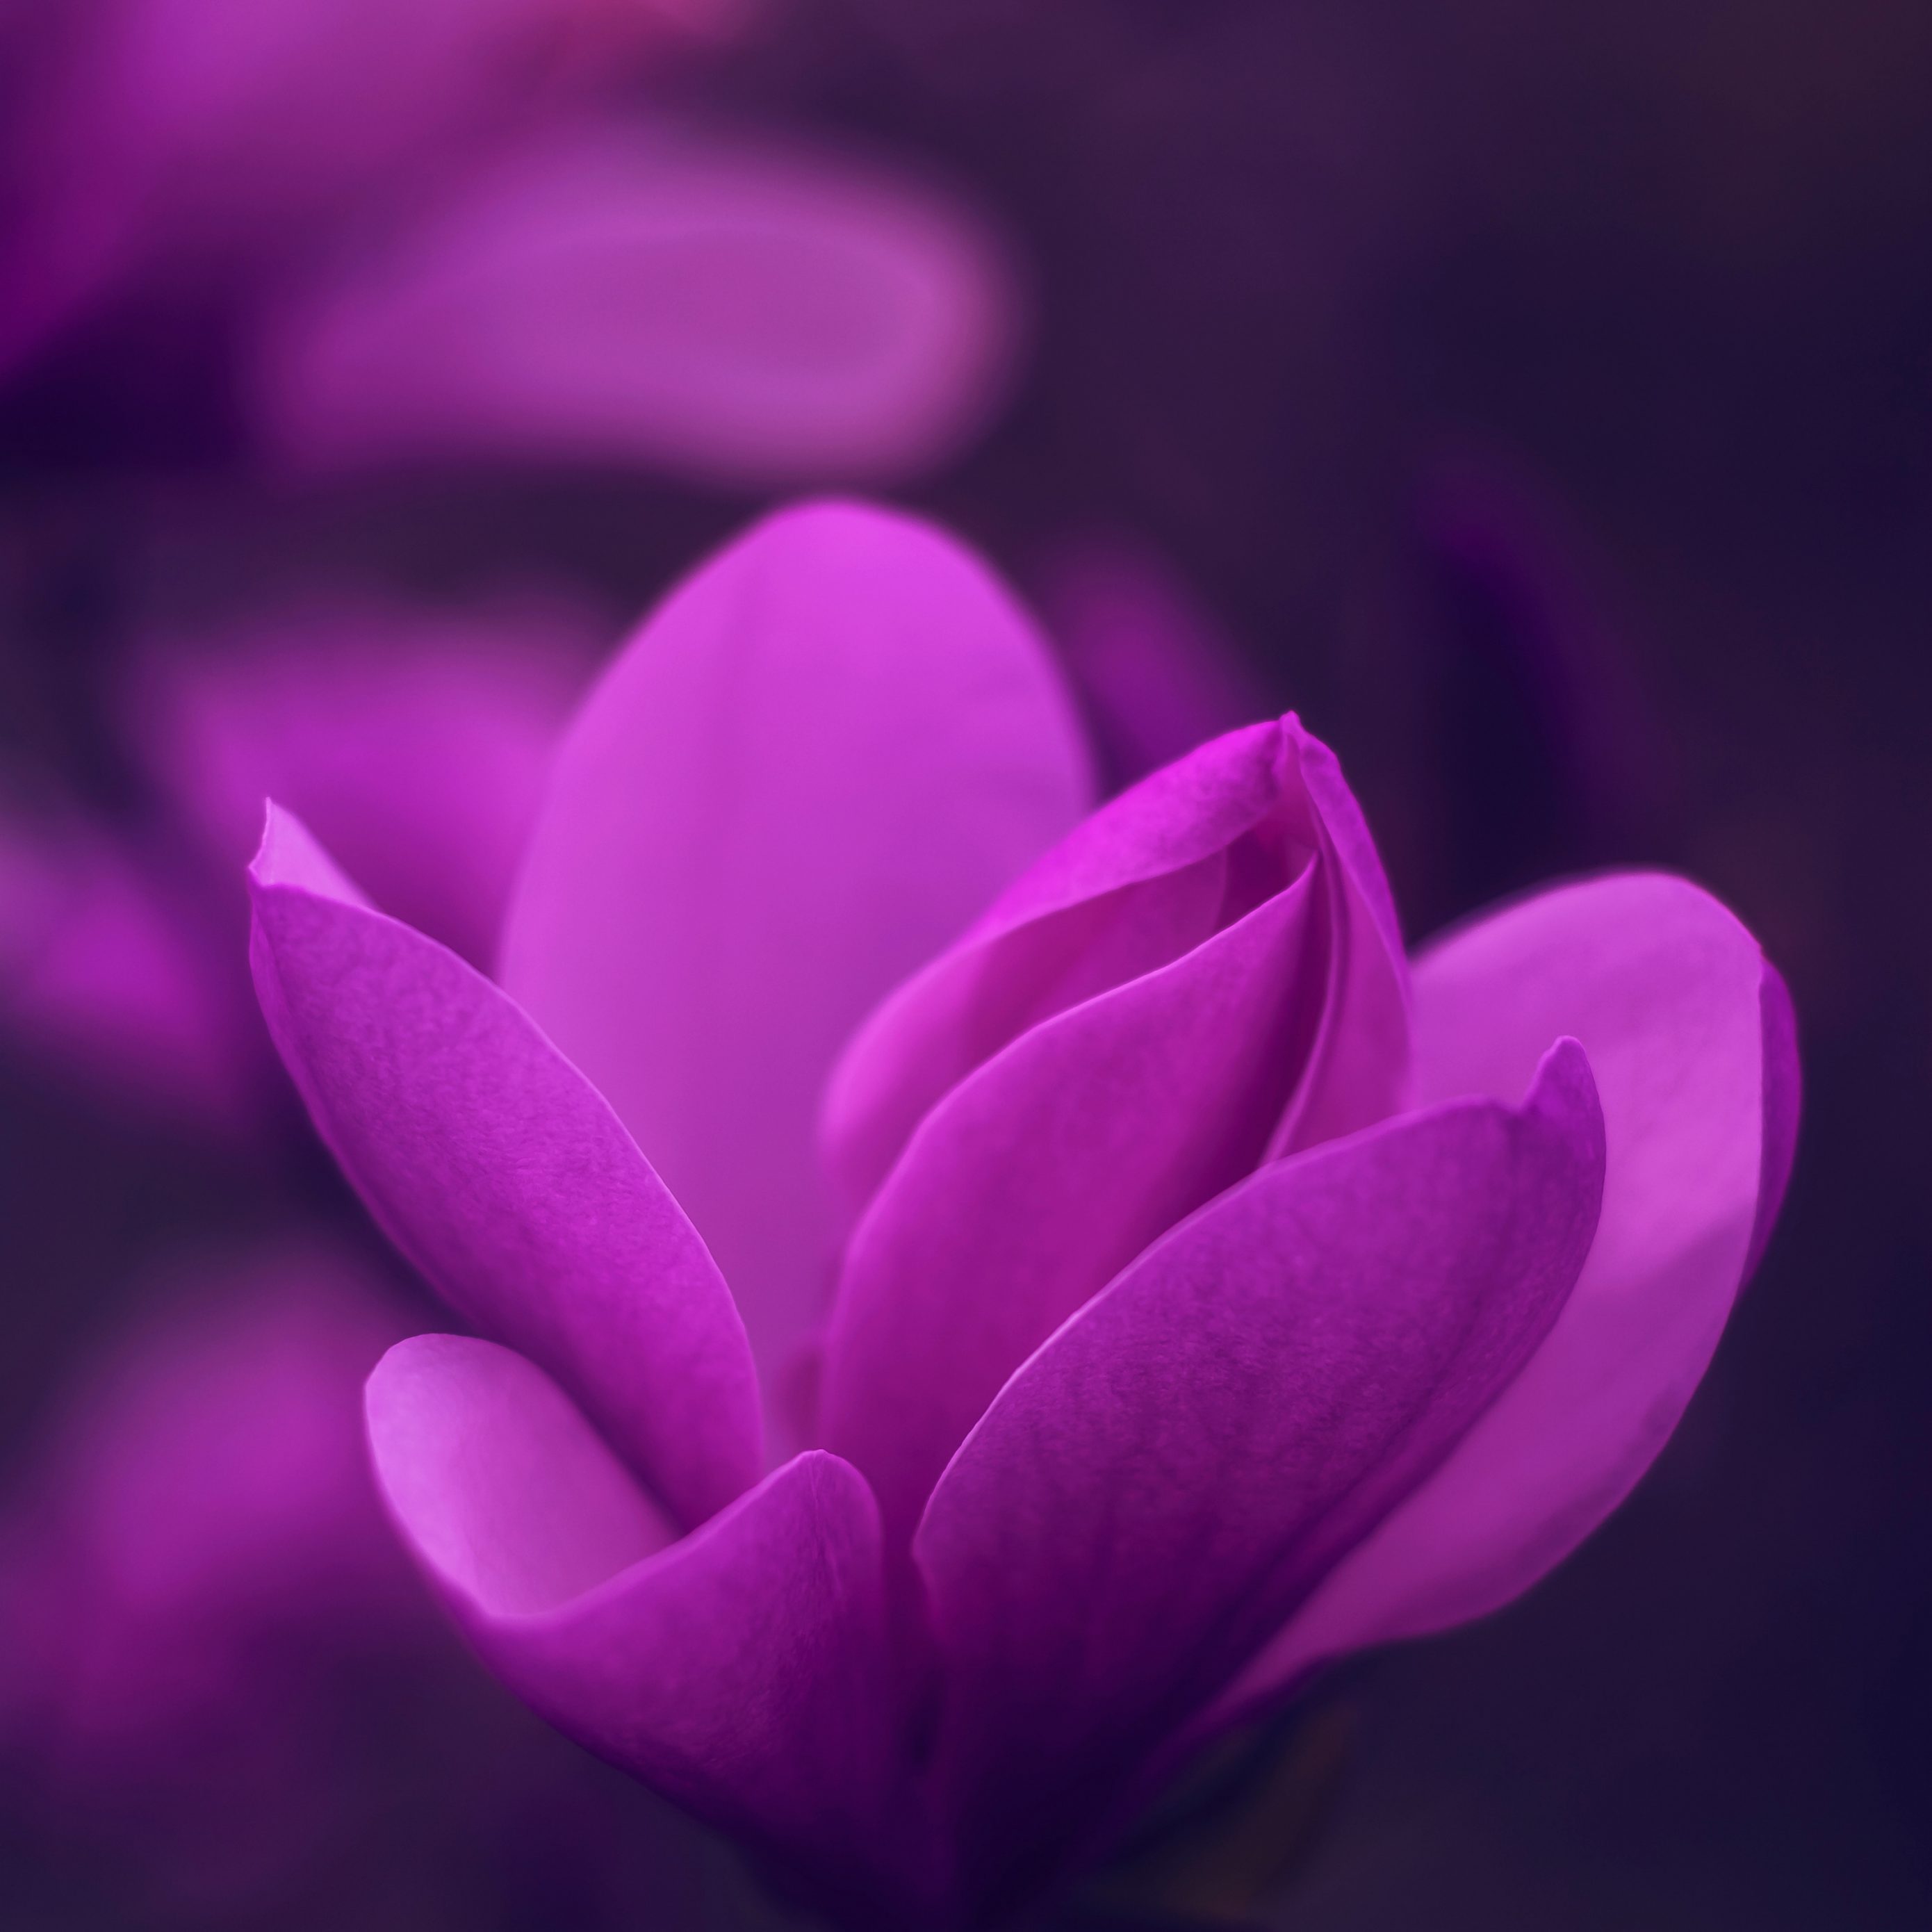 2780x2780 Parallax wallpaper 4k Purple Bloom Blossom Petaled Flower iPad Wallpaper 2780x2780 pixels resolution